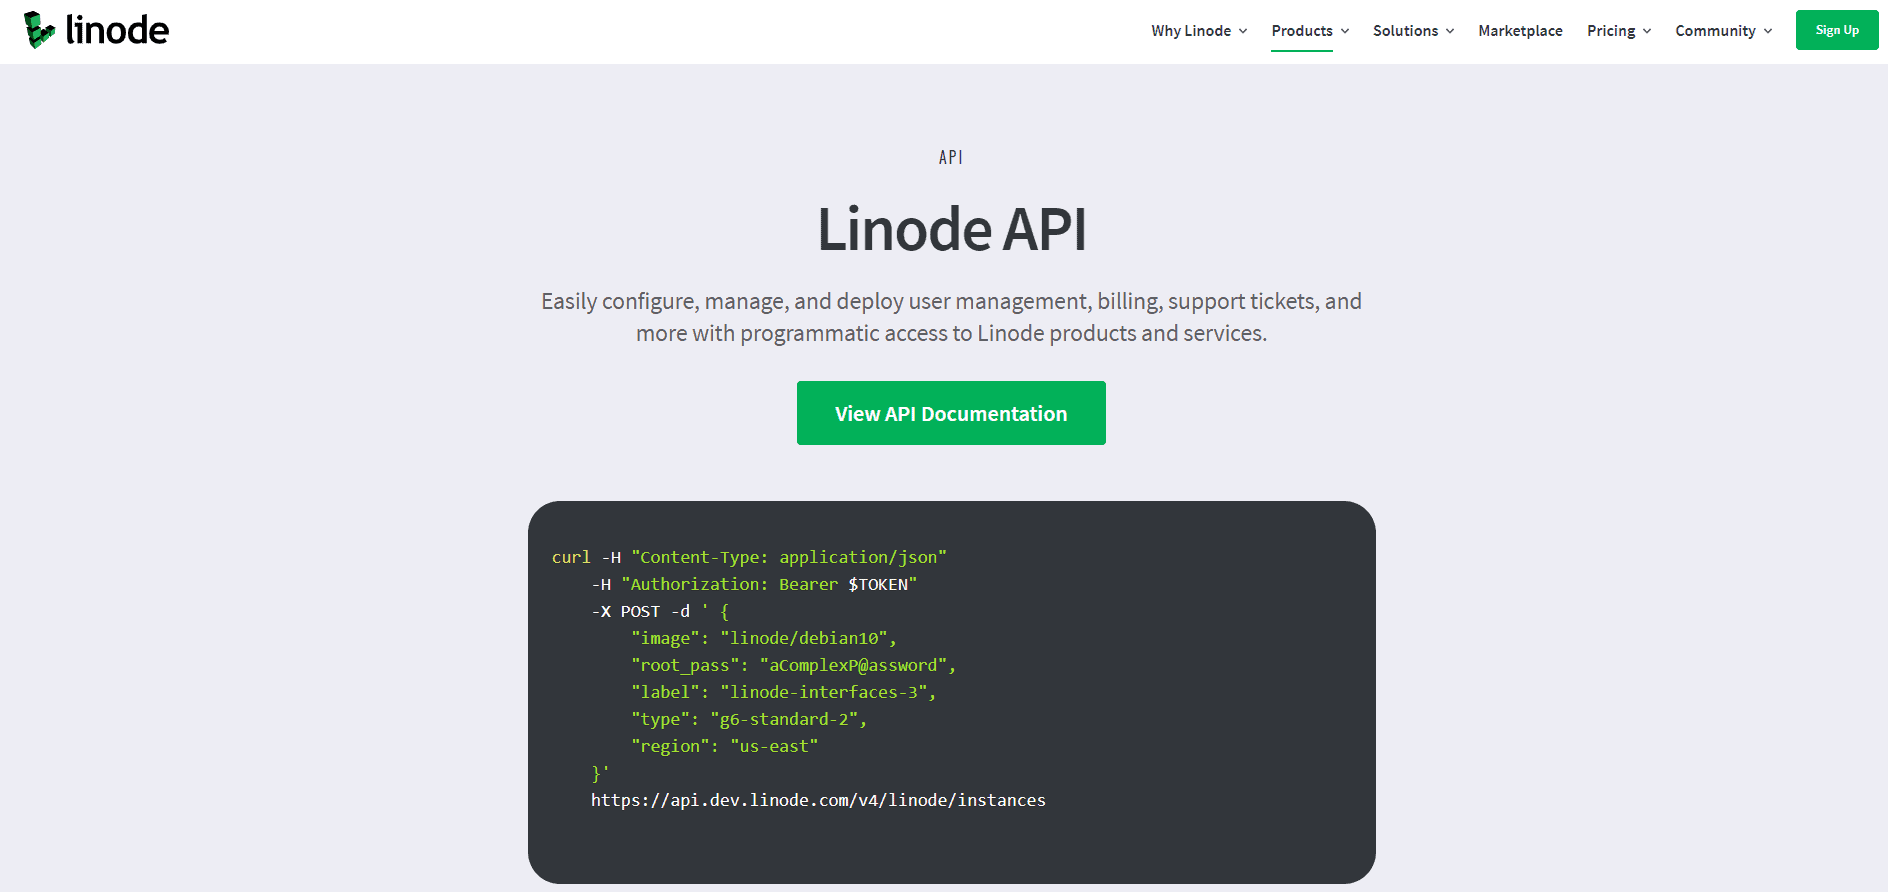 Linode API Tool